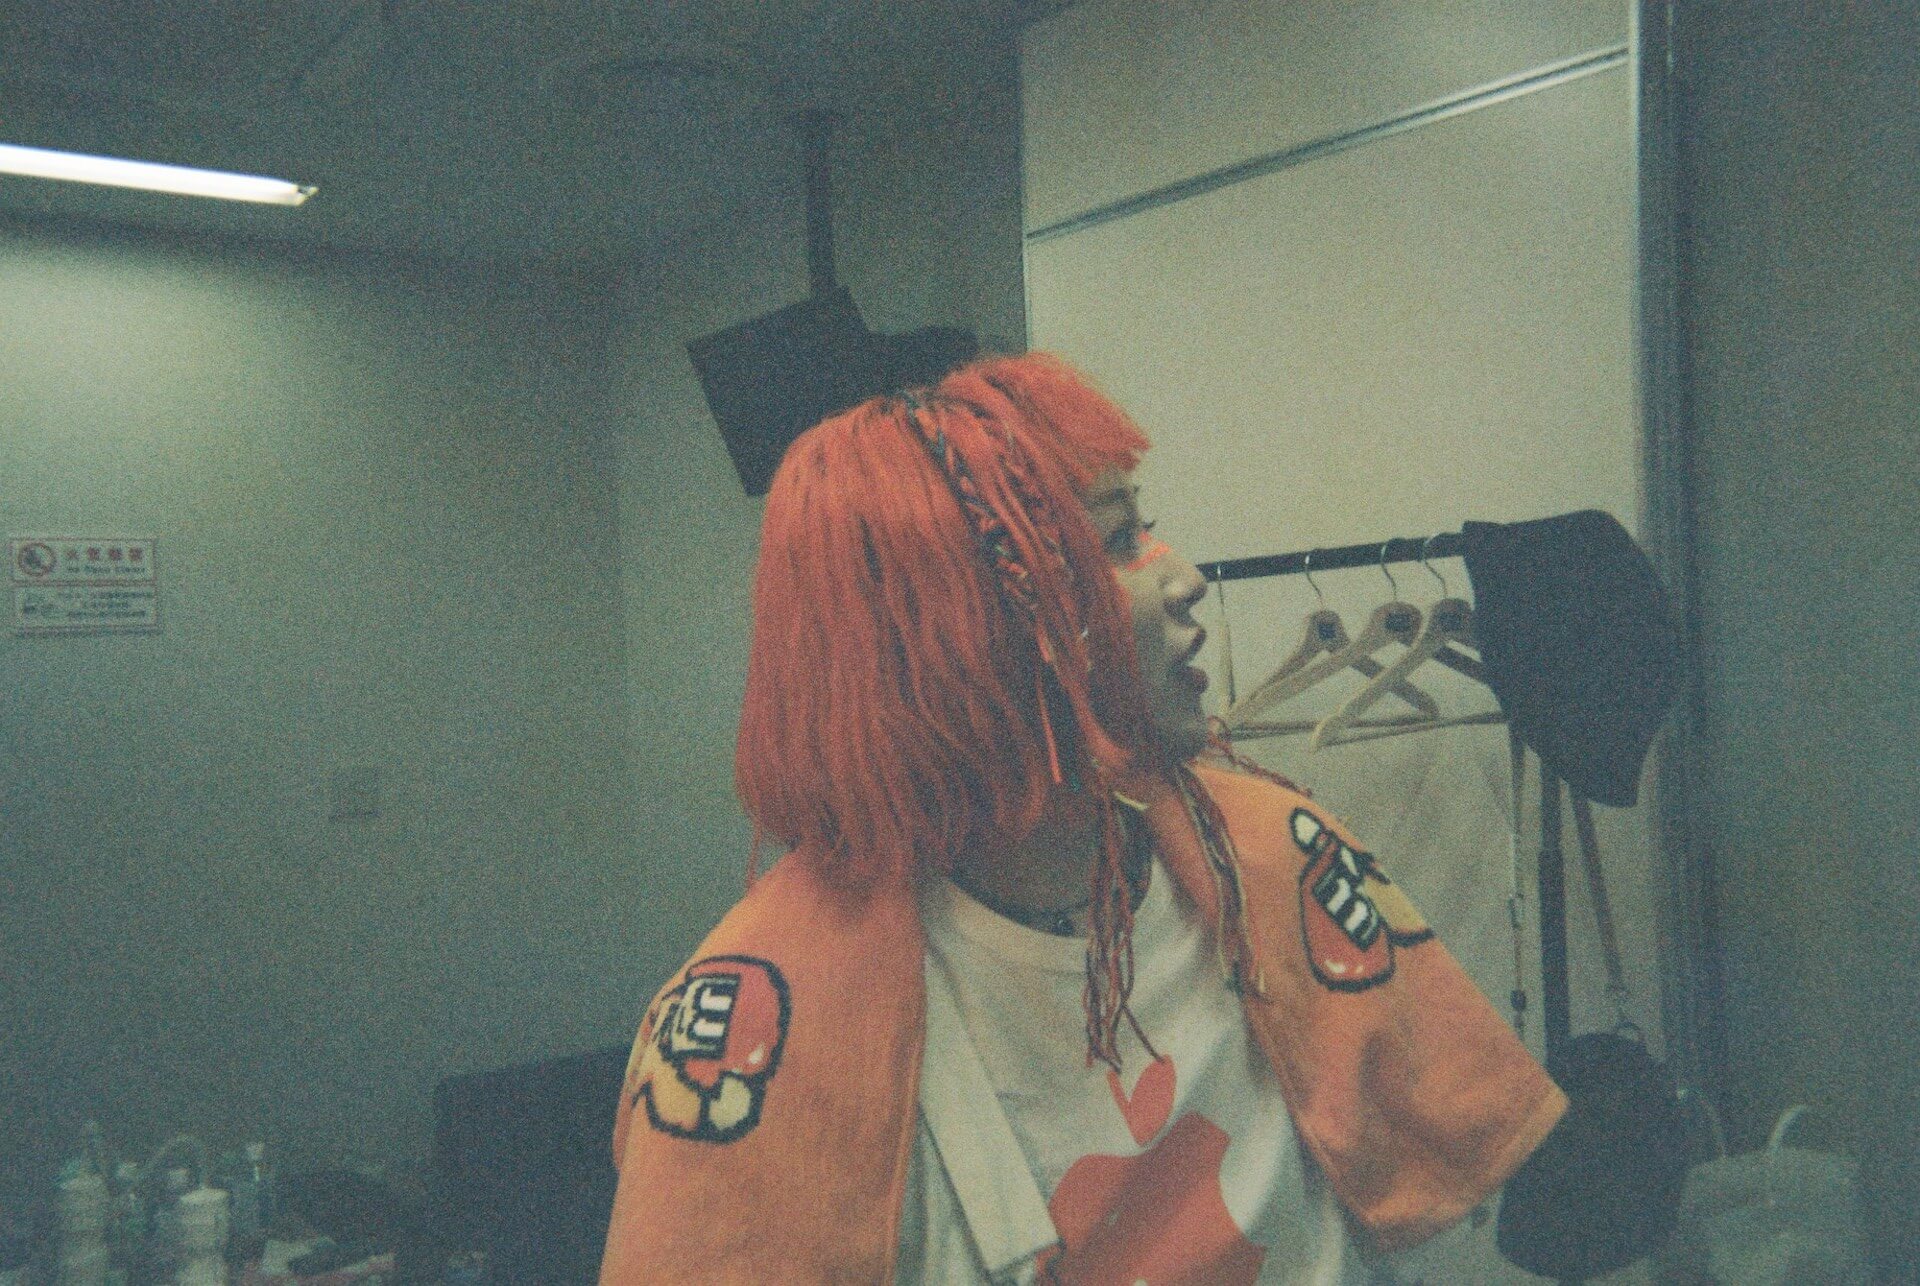 オレンジに塗れた一夜──カメレオン・ライム・ウーピーパイ＜1ST ONE-MAN LIVE “Orange”＞東京公演をフォトレポート music230718-clwp15